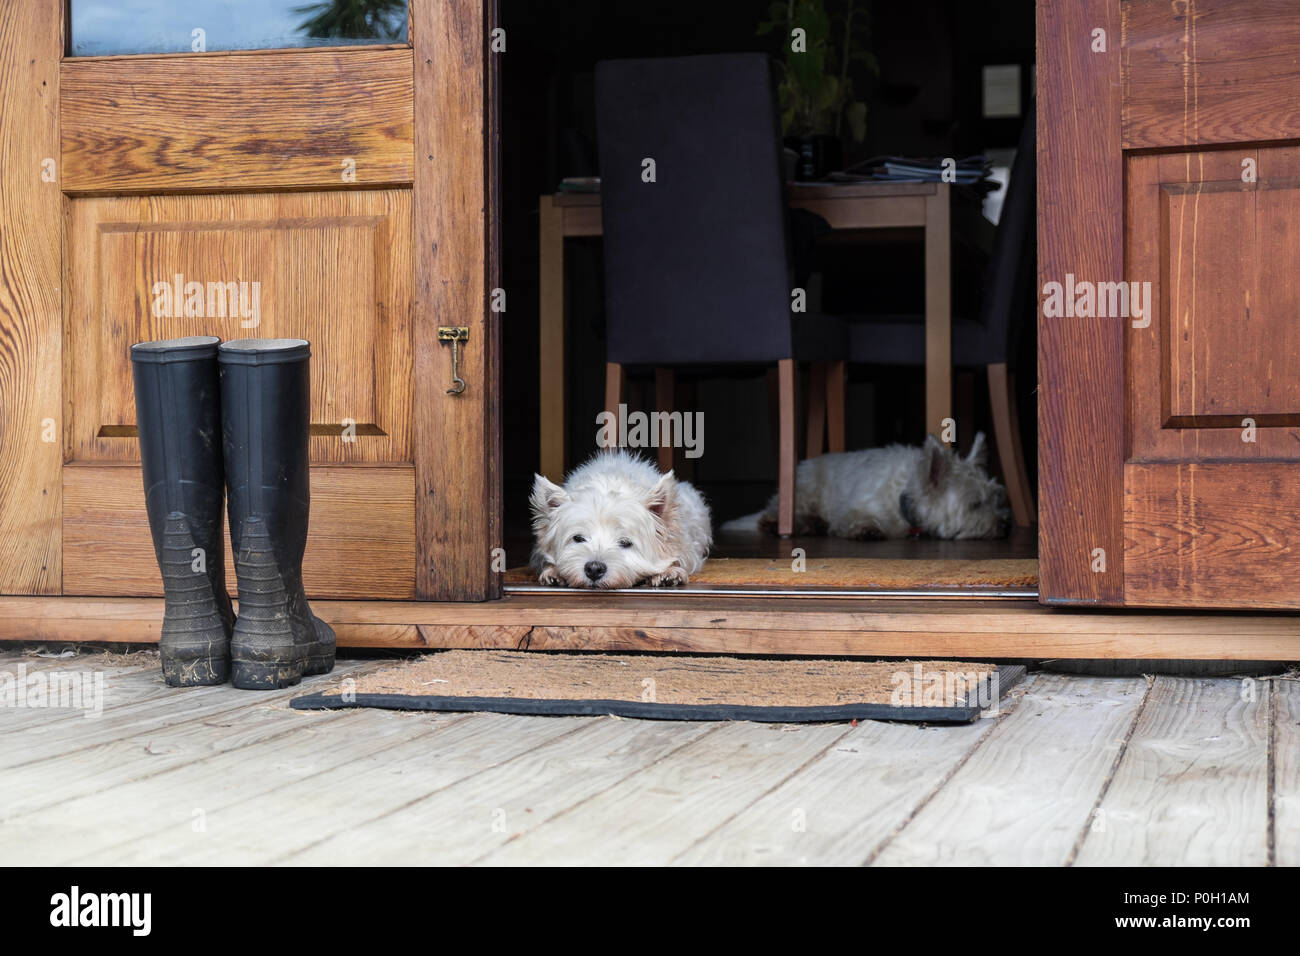 Due annoiati westies all'interno di un casale, posa sul pavimento da una porta a guardare all'esterno - orientamento orizzontale - fotografato in Nuova Zelanda, NZ Foto Stock